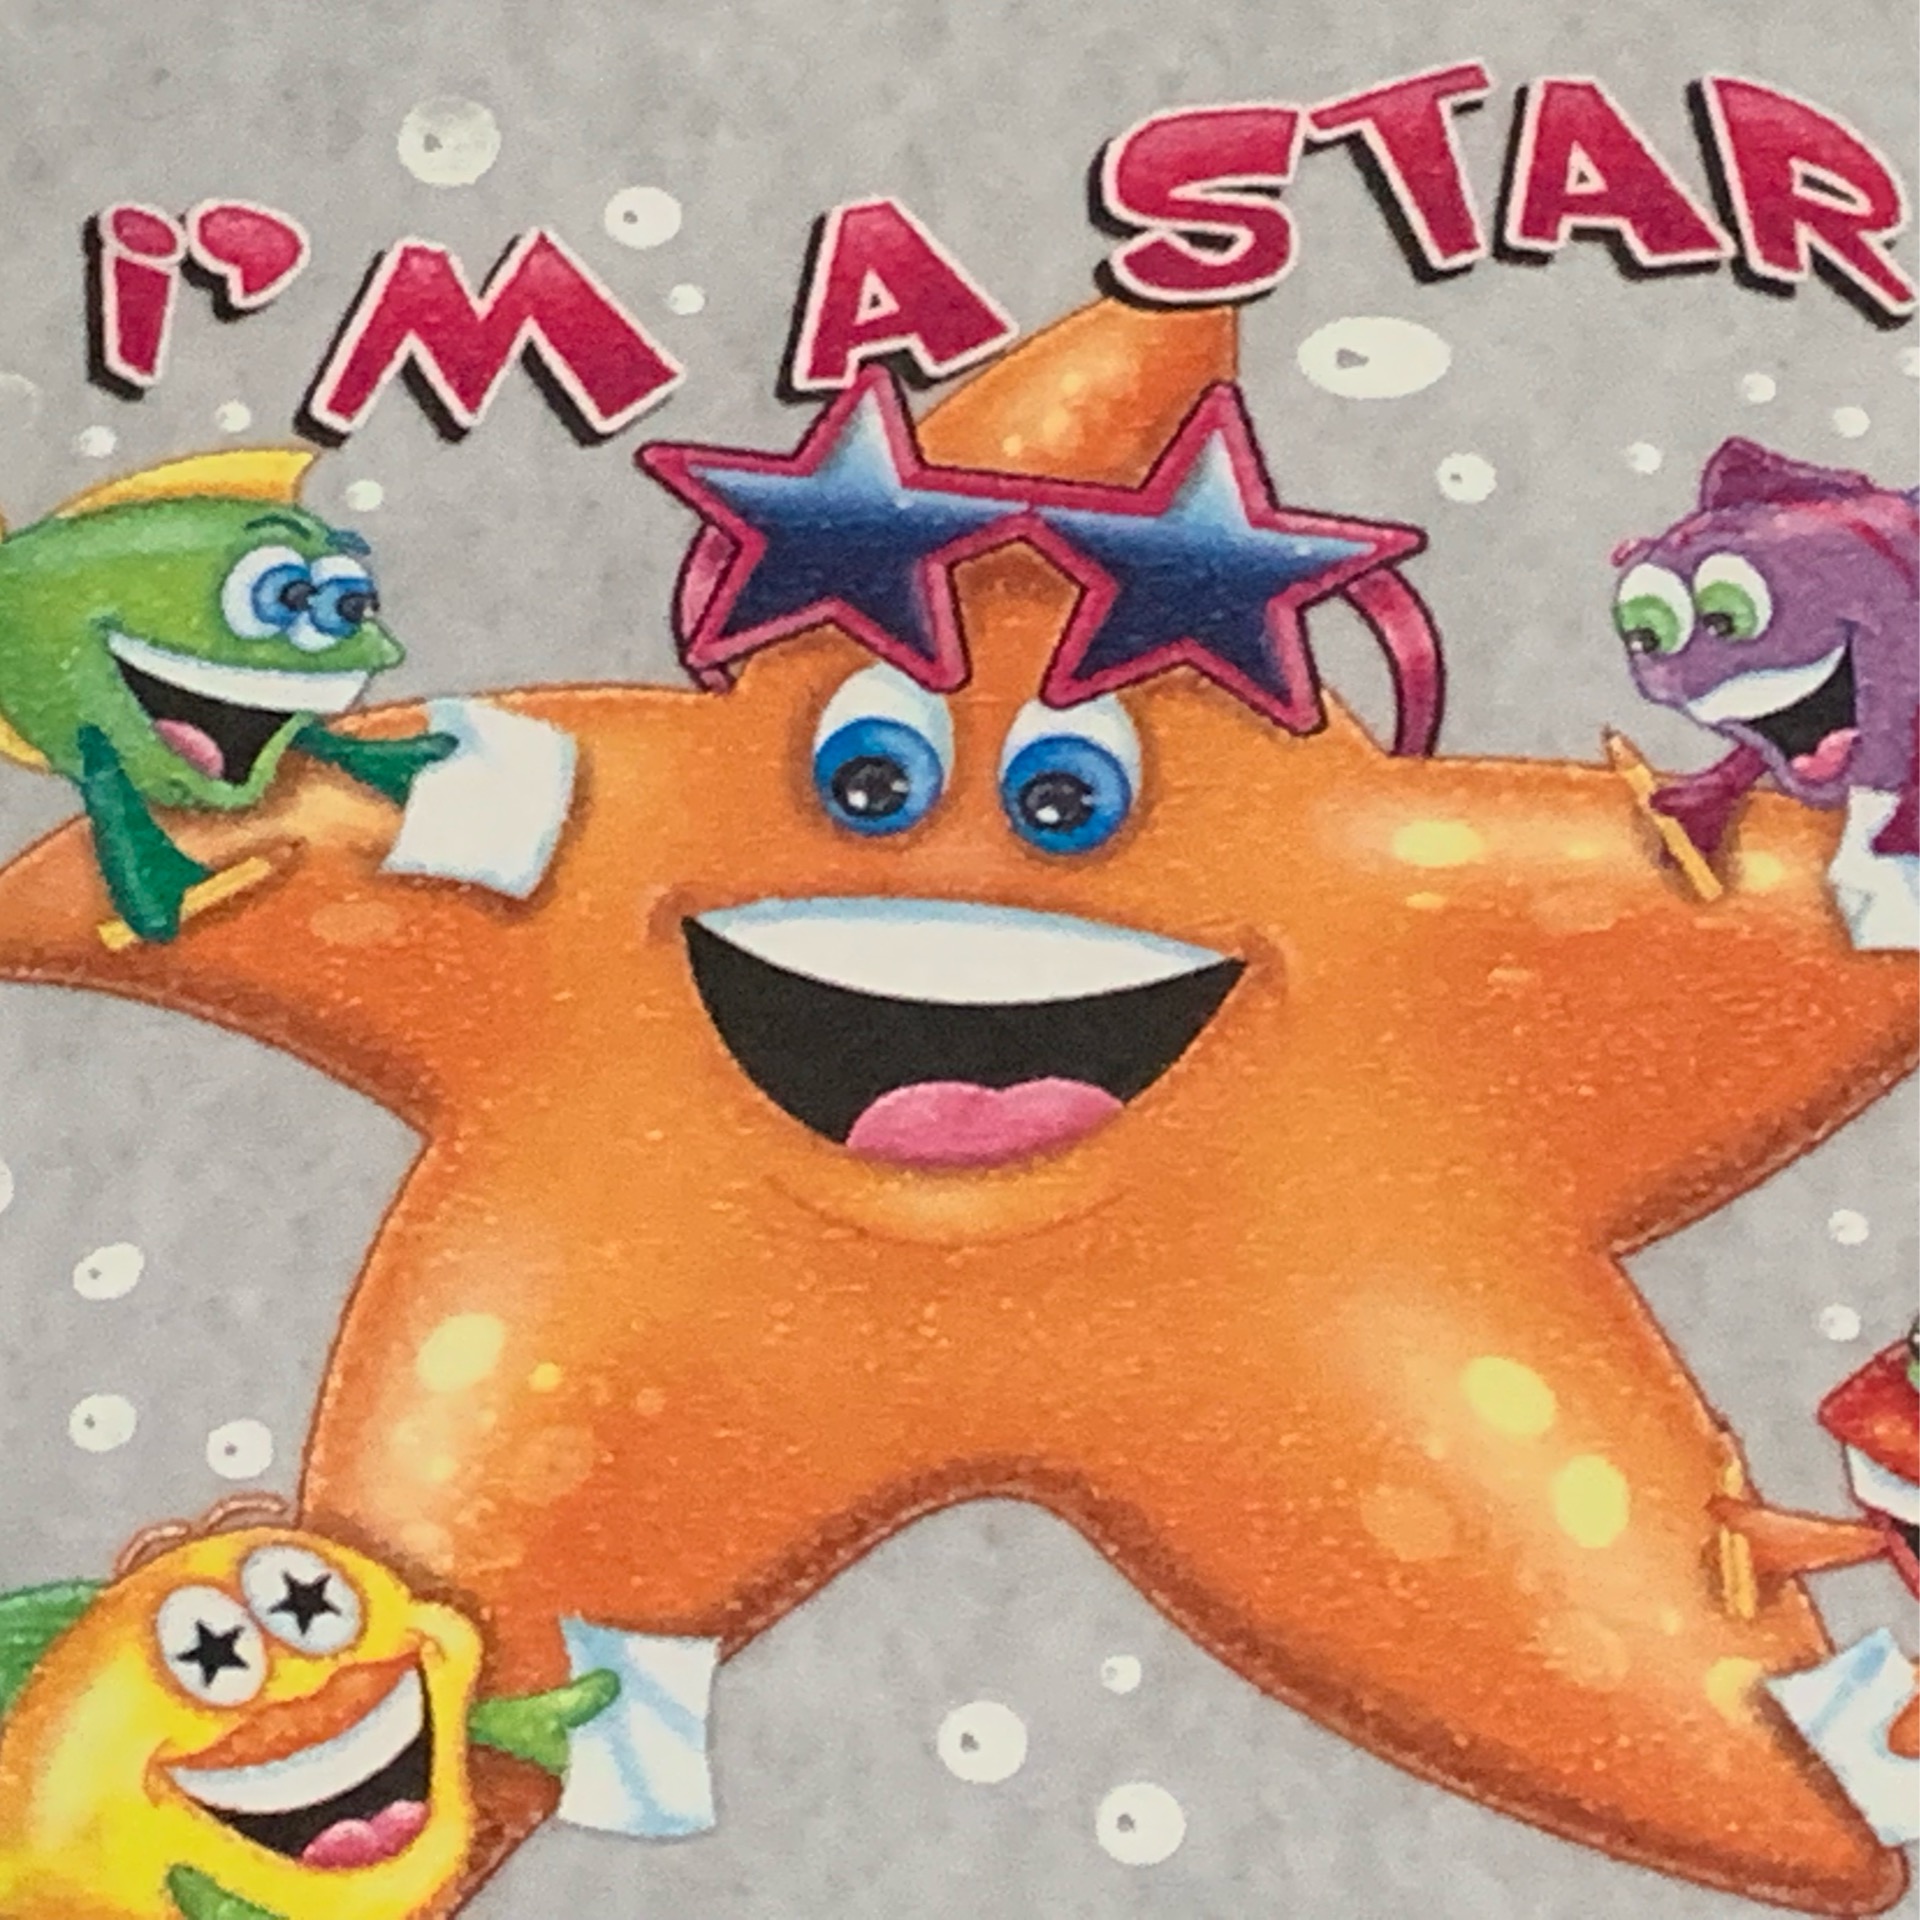 I am a Star(fish)